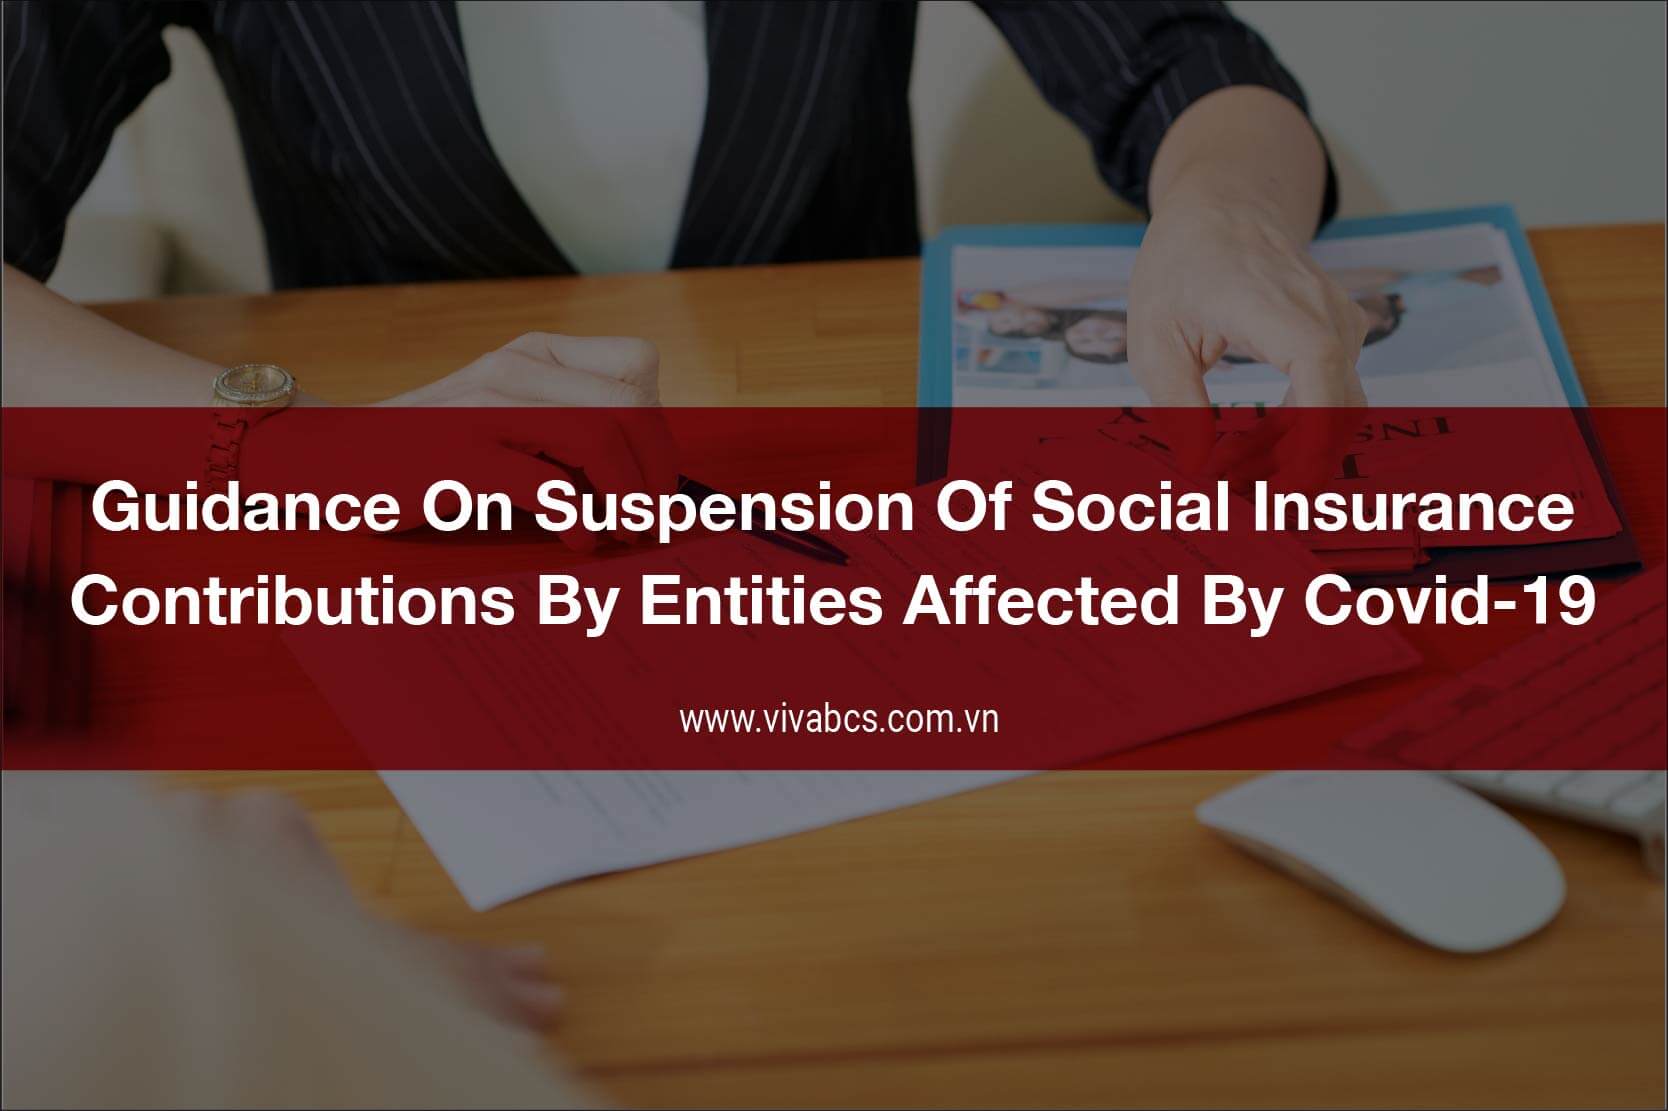 Suspension of social insurance